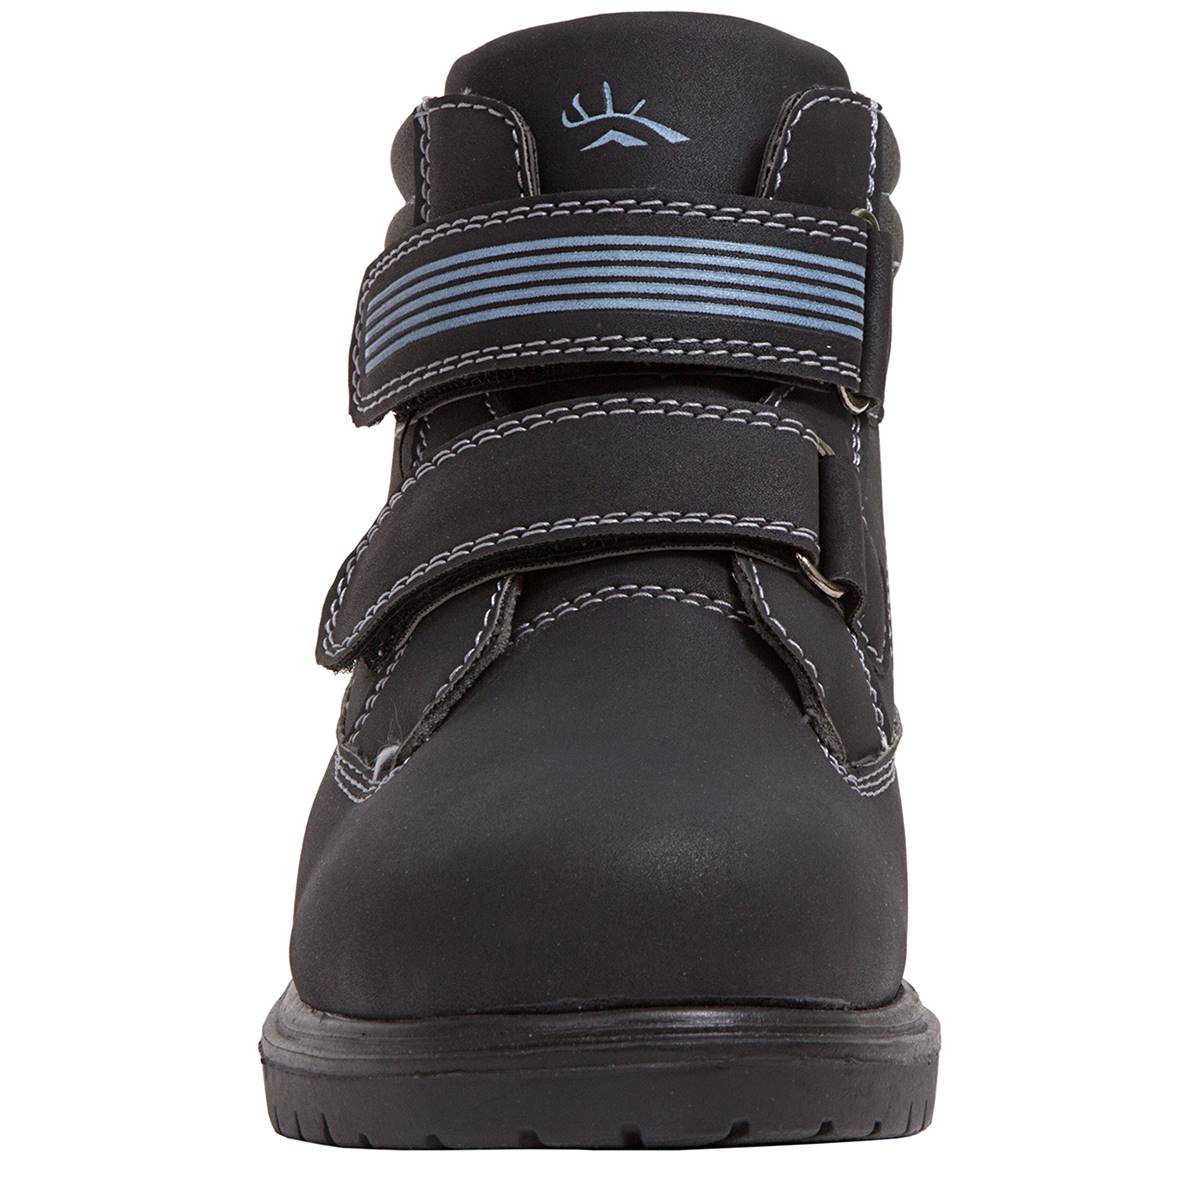 Little Boy Deer Stag(R) Marker Boots - Black/Grey